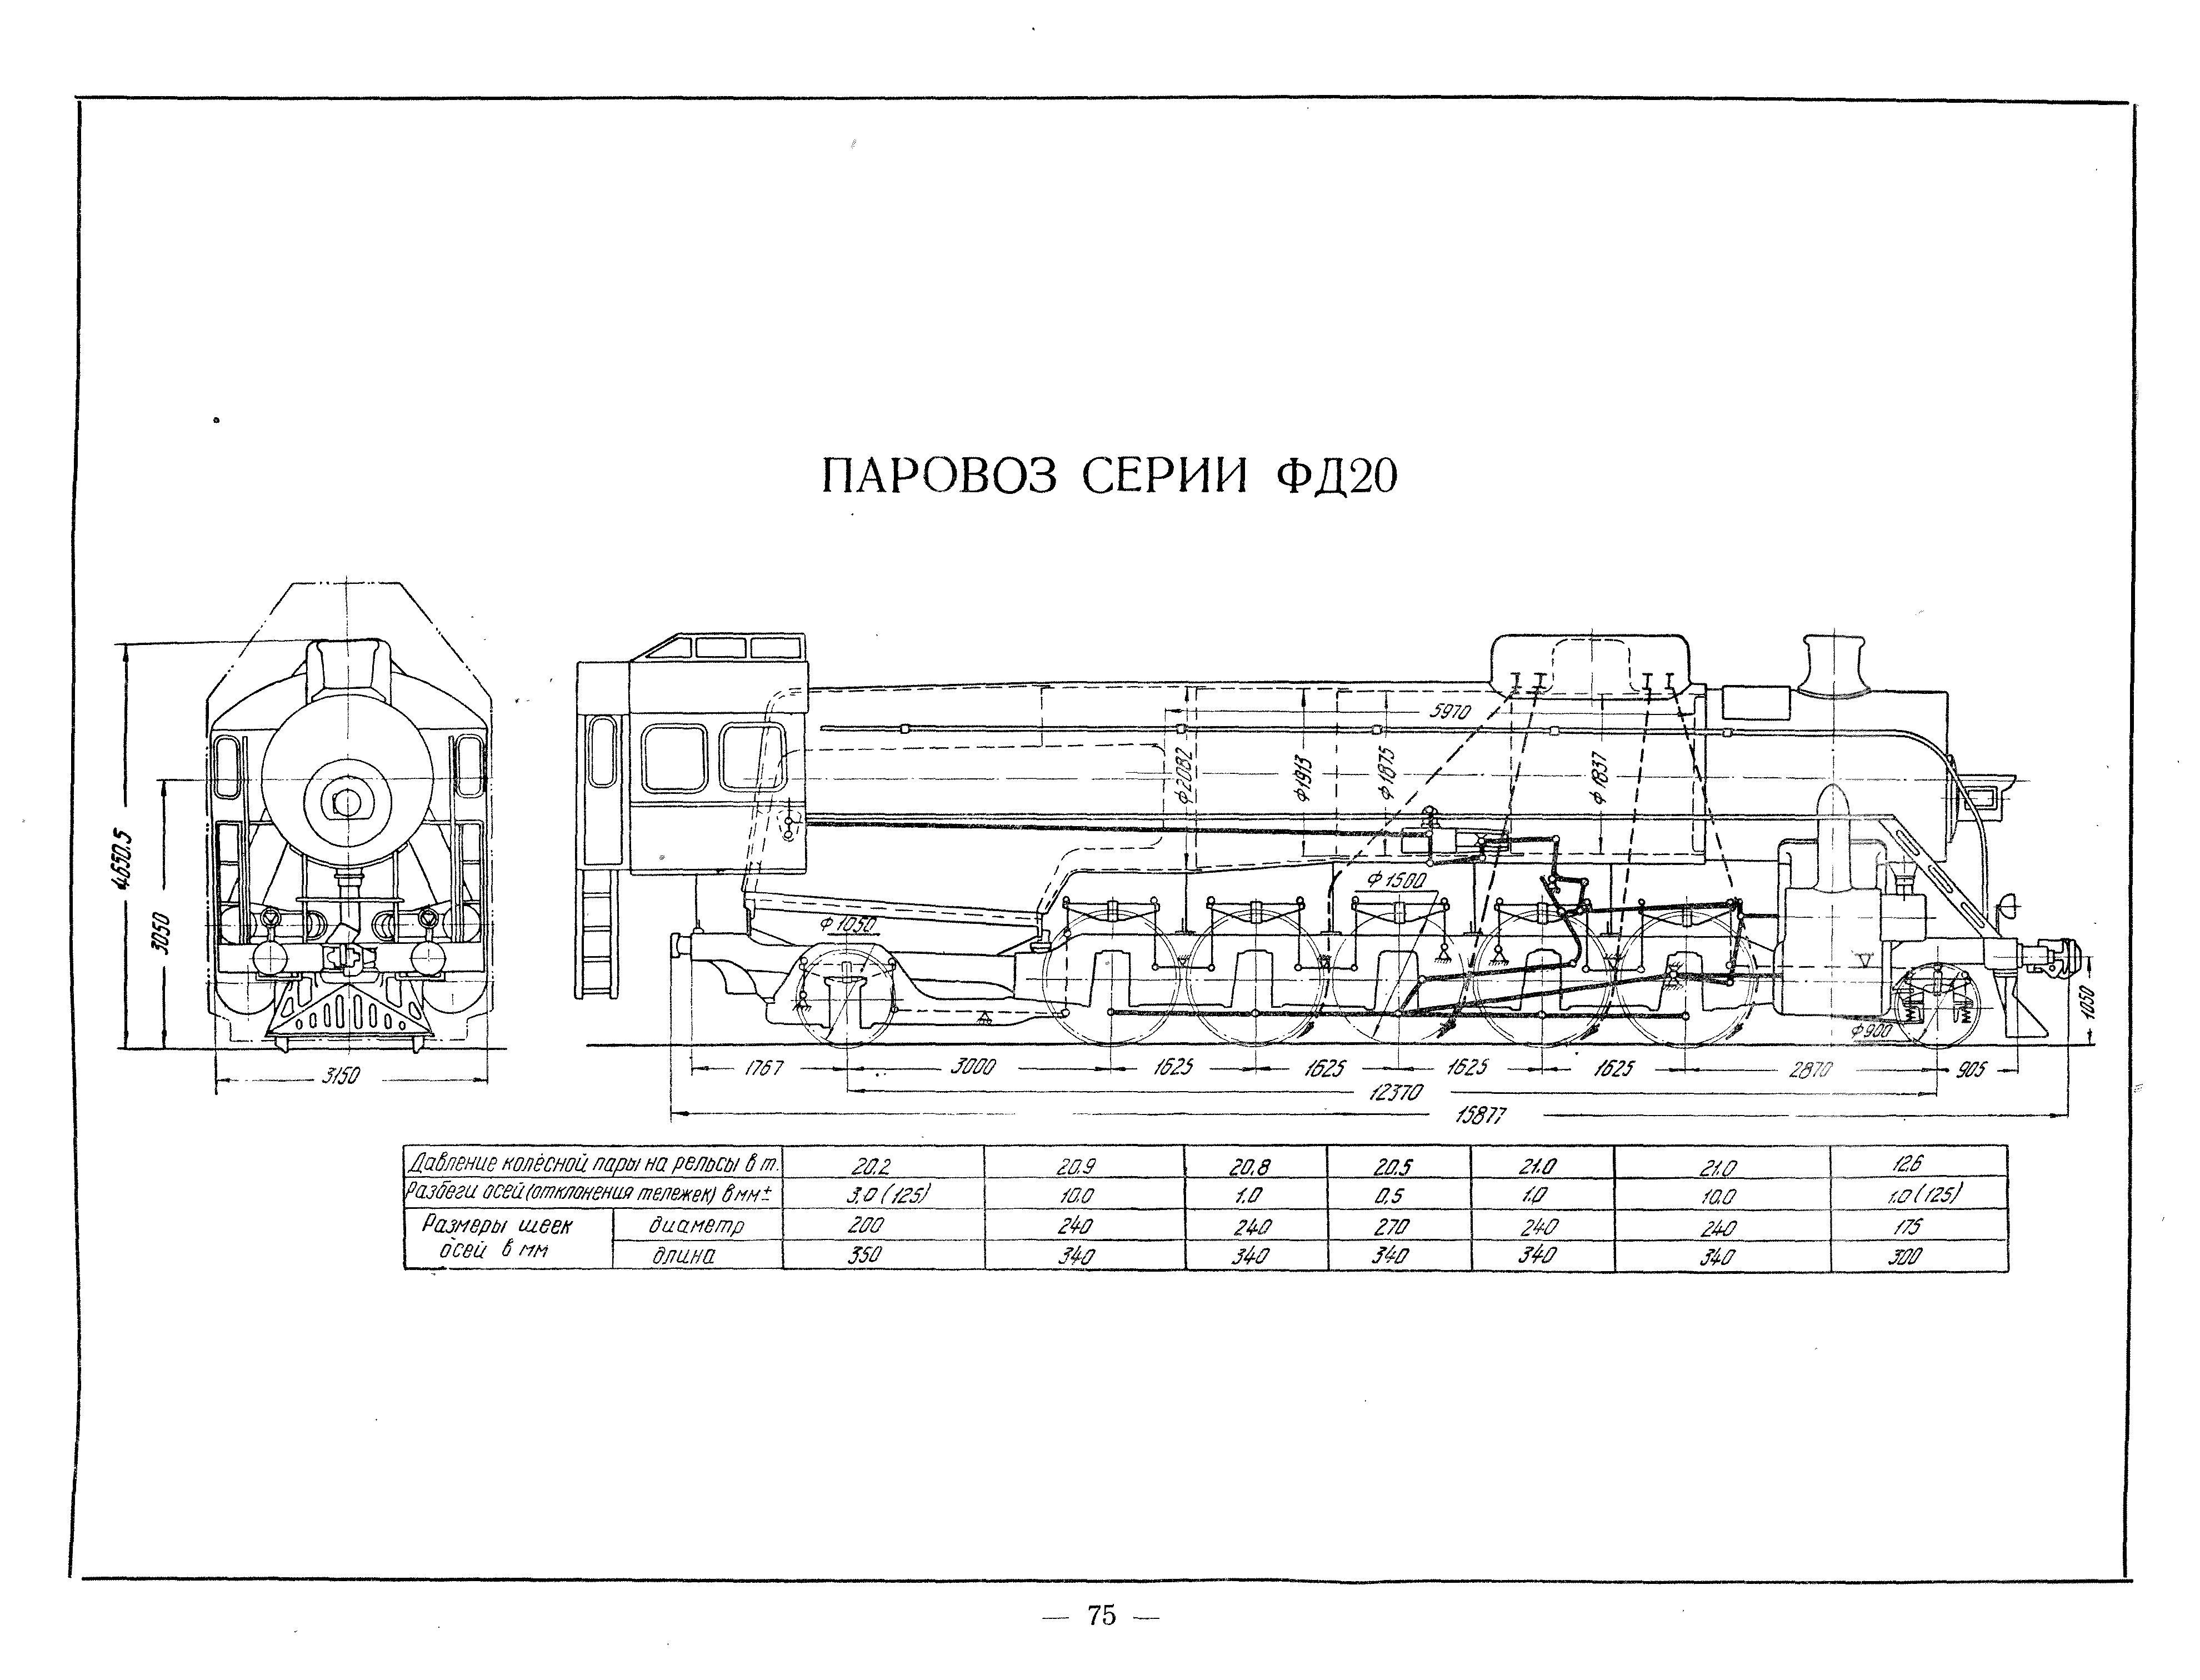 火车蒸汽原理图图片